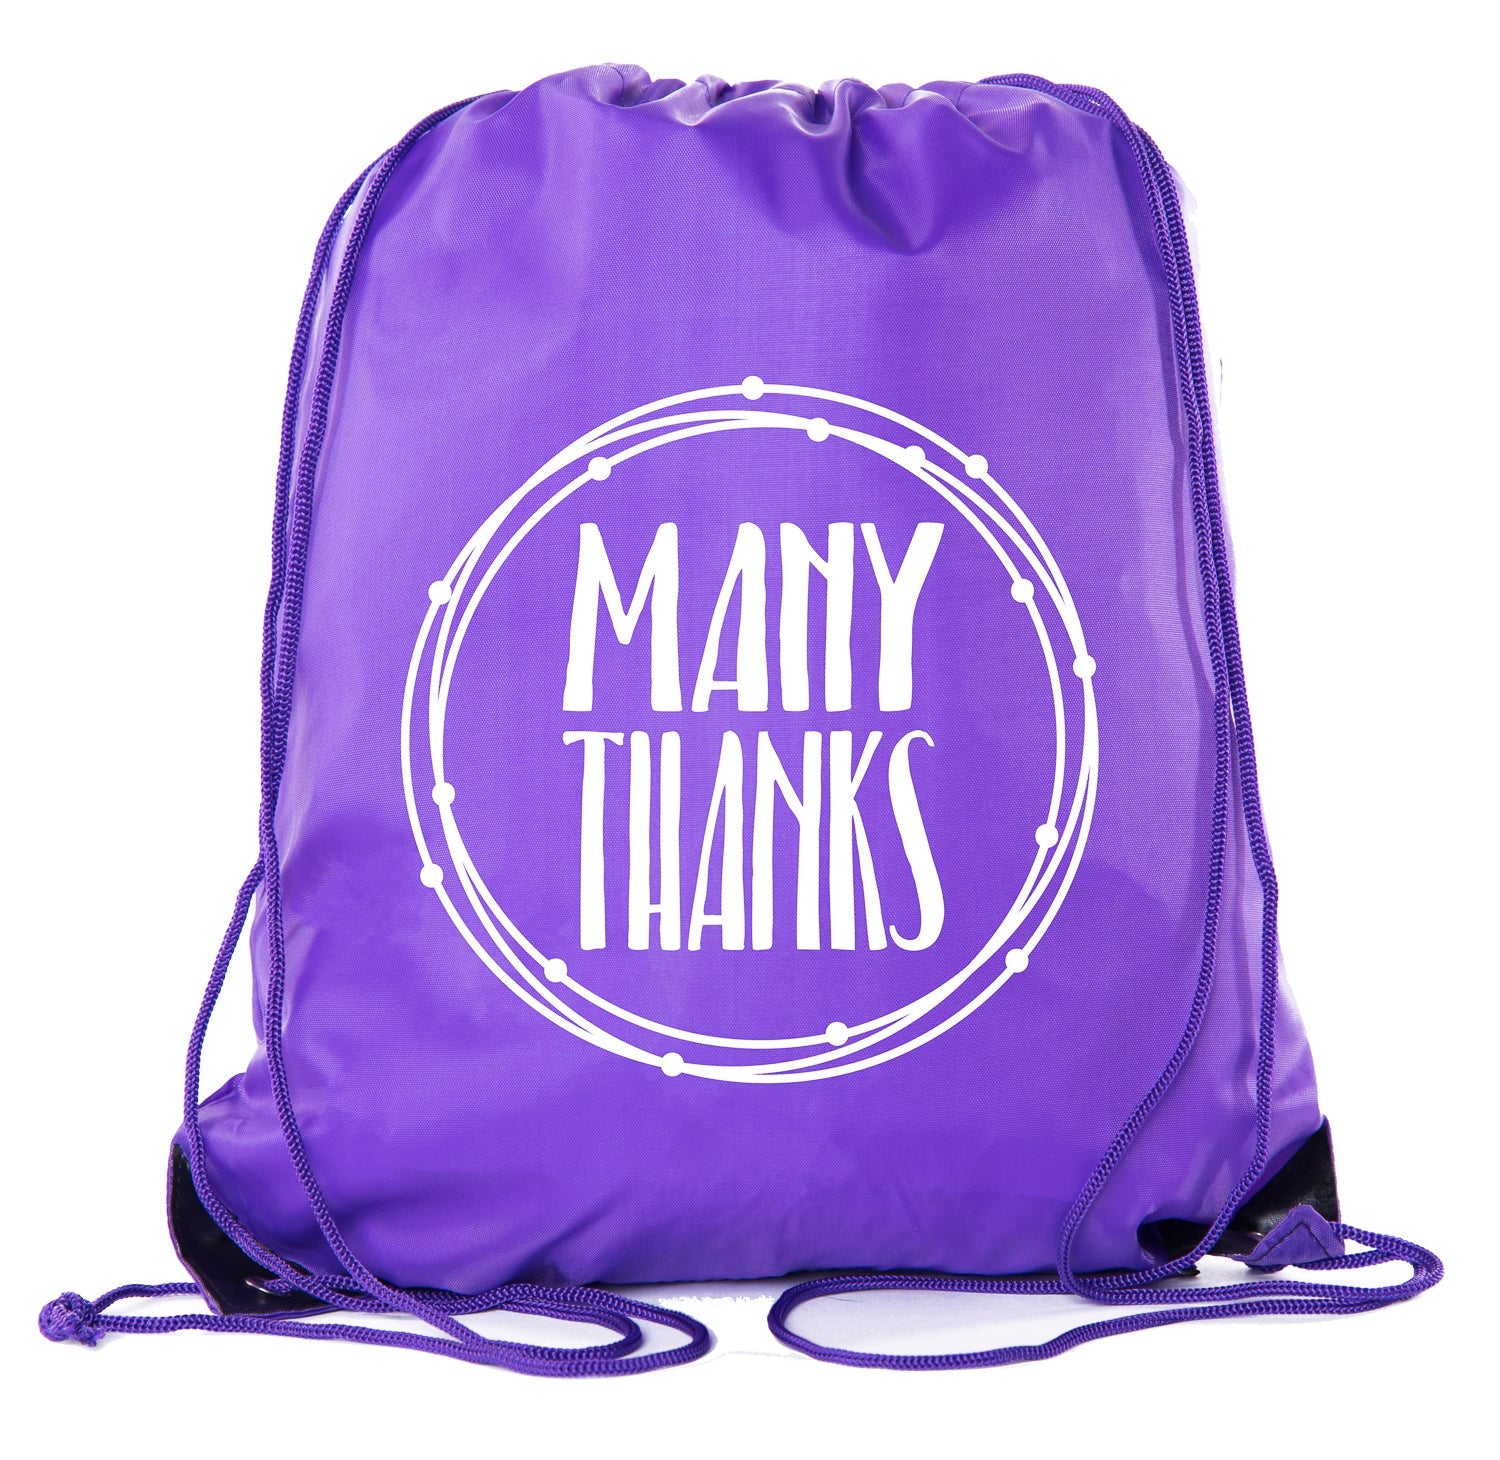 Many Thanks - Circle - Polyester Drawstring Bag - Mato & Hash